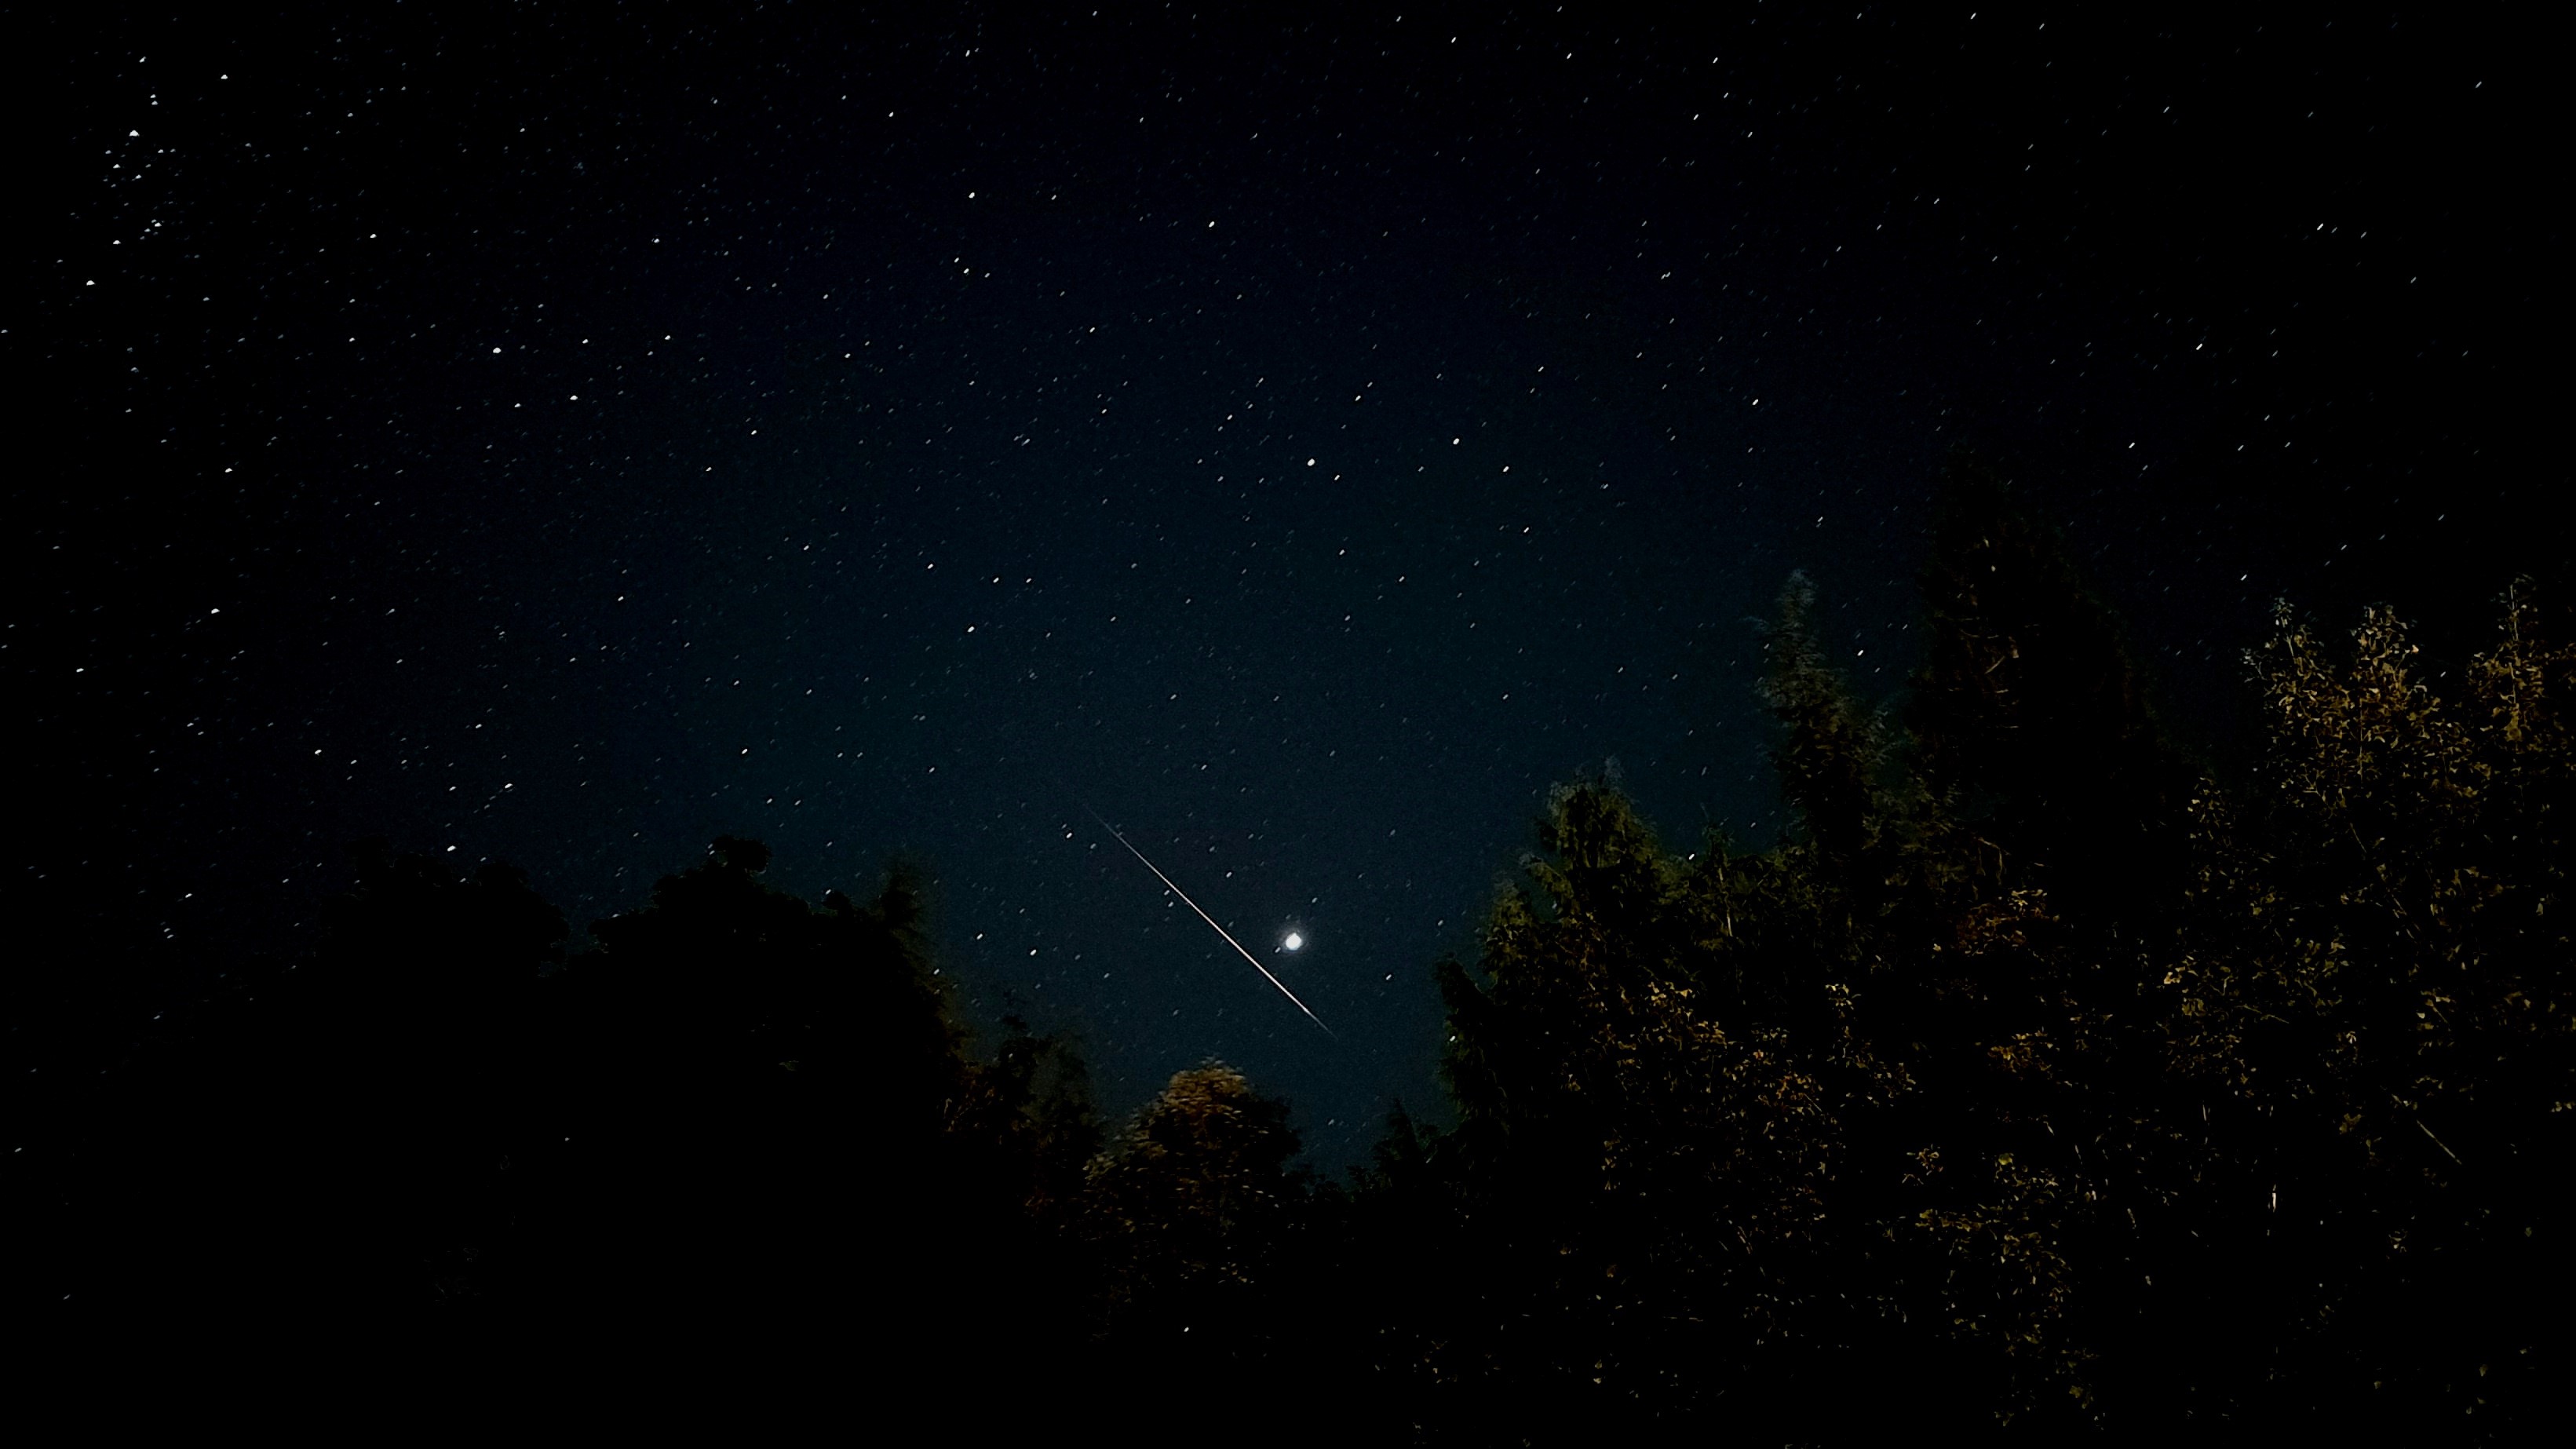 Belirgin bir meteor, parlak gezegen Jüpiter'in altında gökyüzünde ilerliyor.